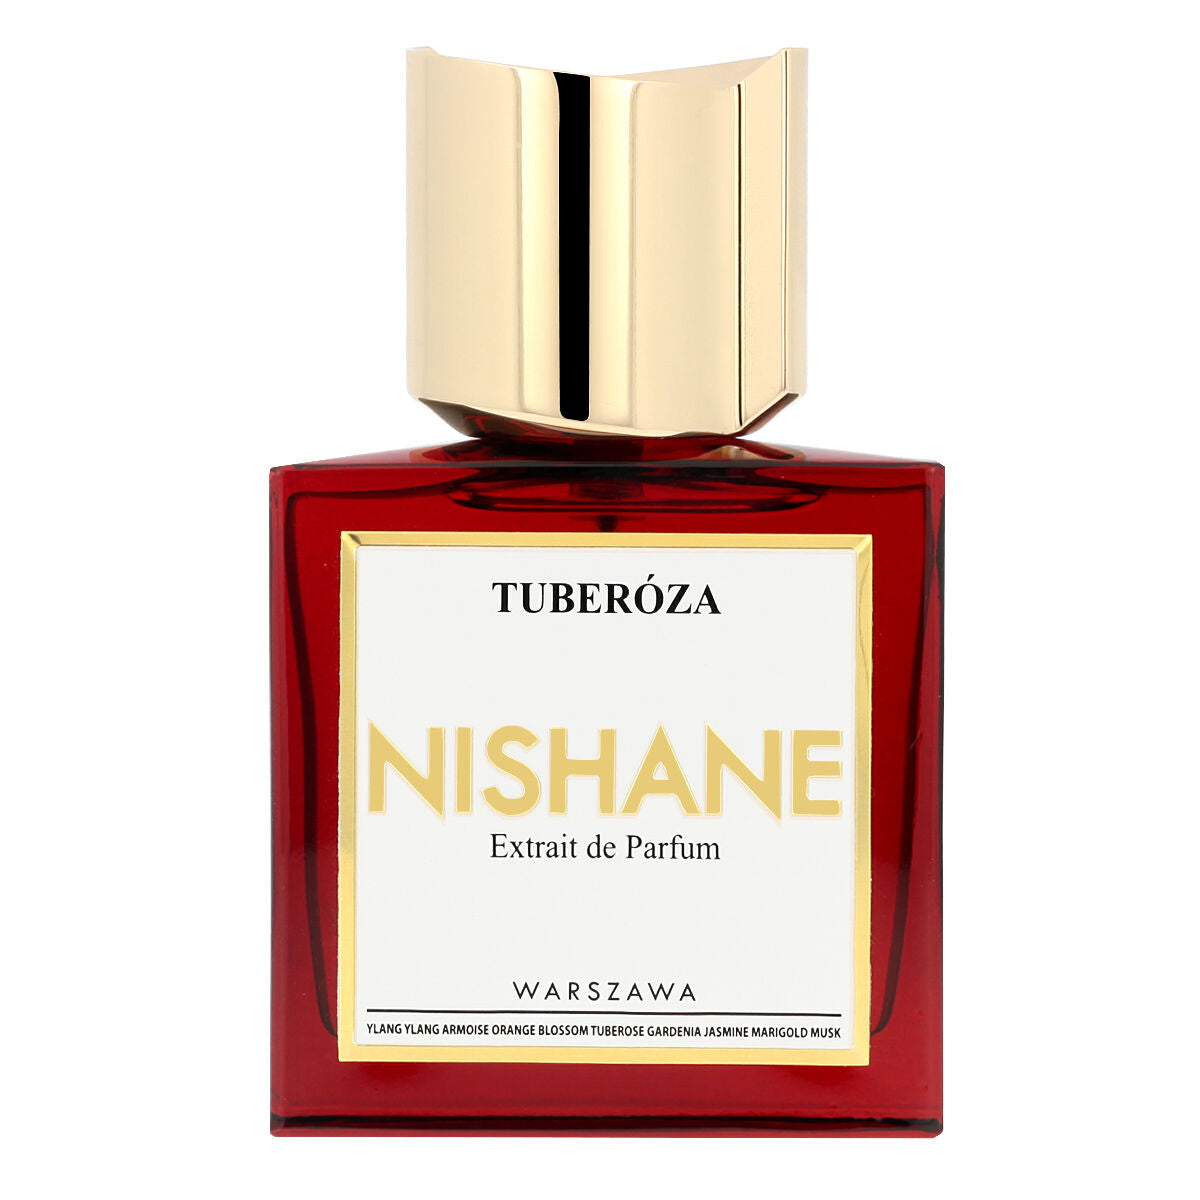 Unisex Perfume Nishane Tuberóza 50 ml-1